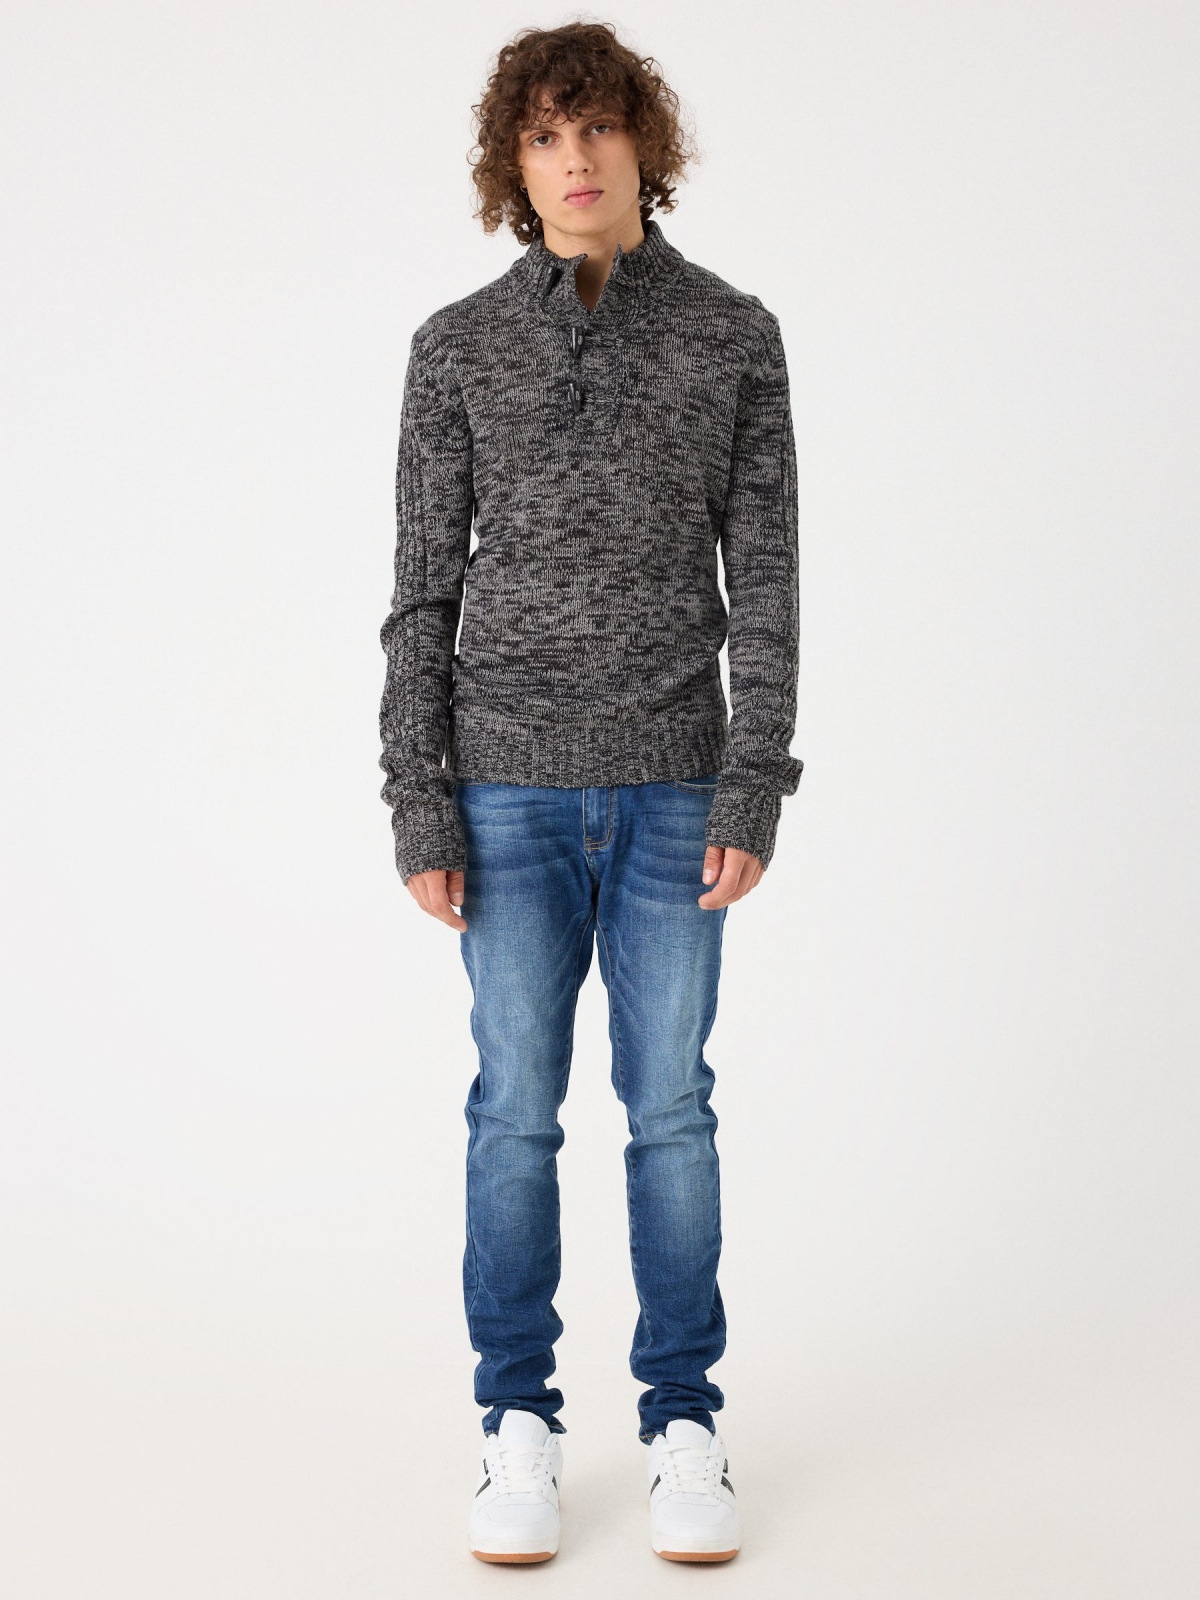 Fleece turtleneck sweater dark grey front view